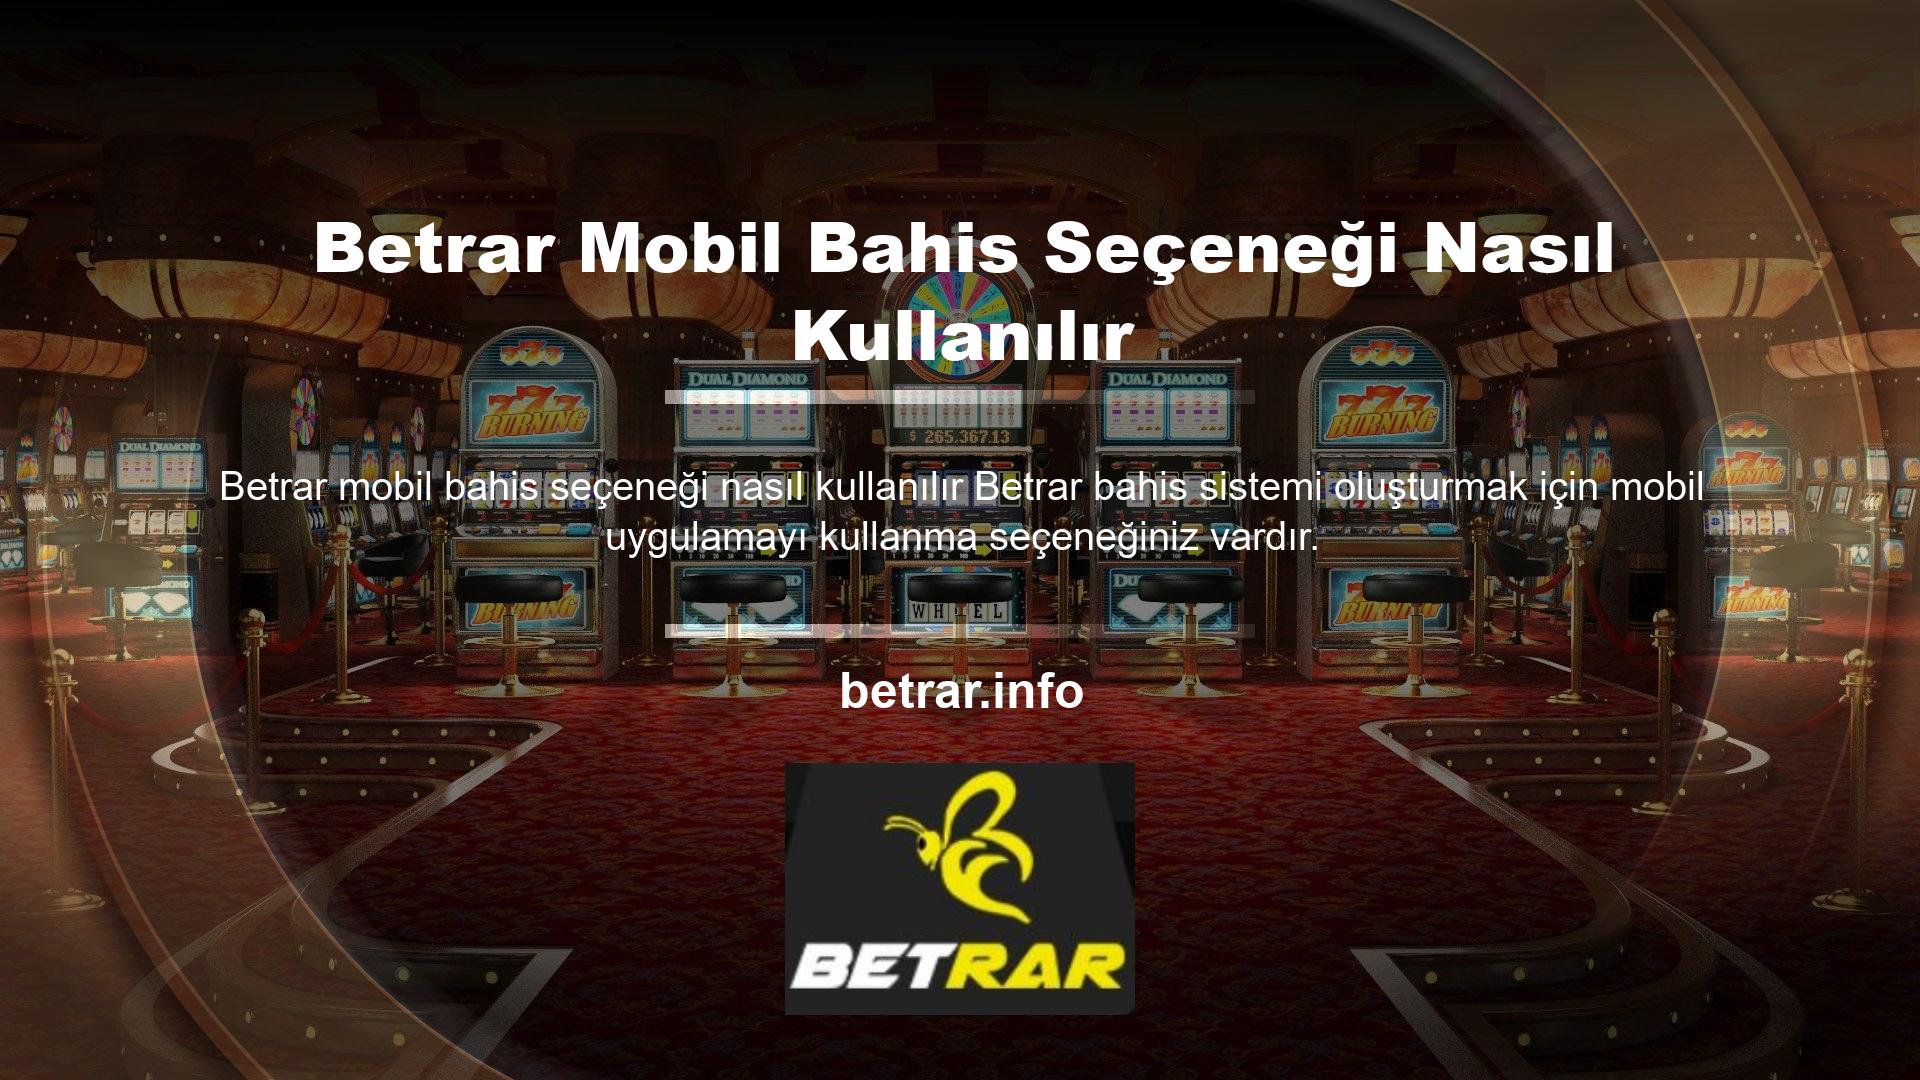 Faaliyet gösteren casino sitelerinin mobil uygulamalarda herhangi bir sıkıntısı yoktur